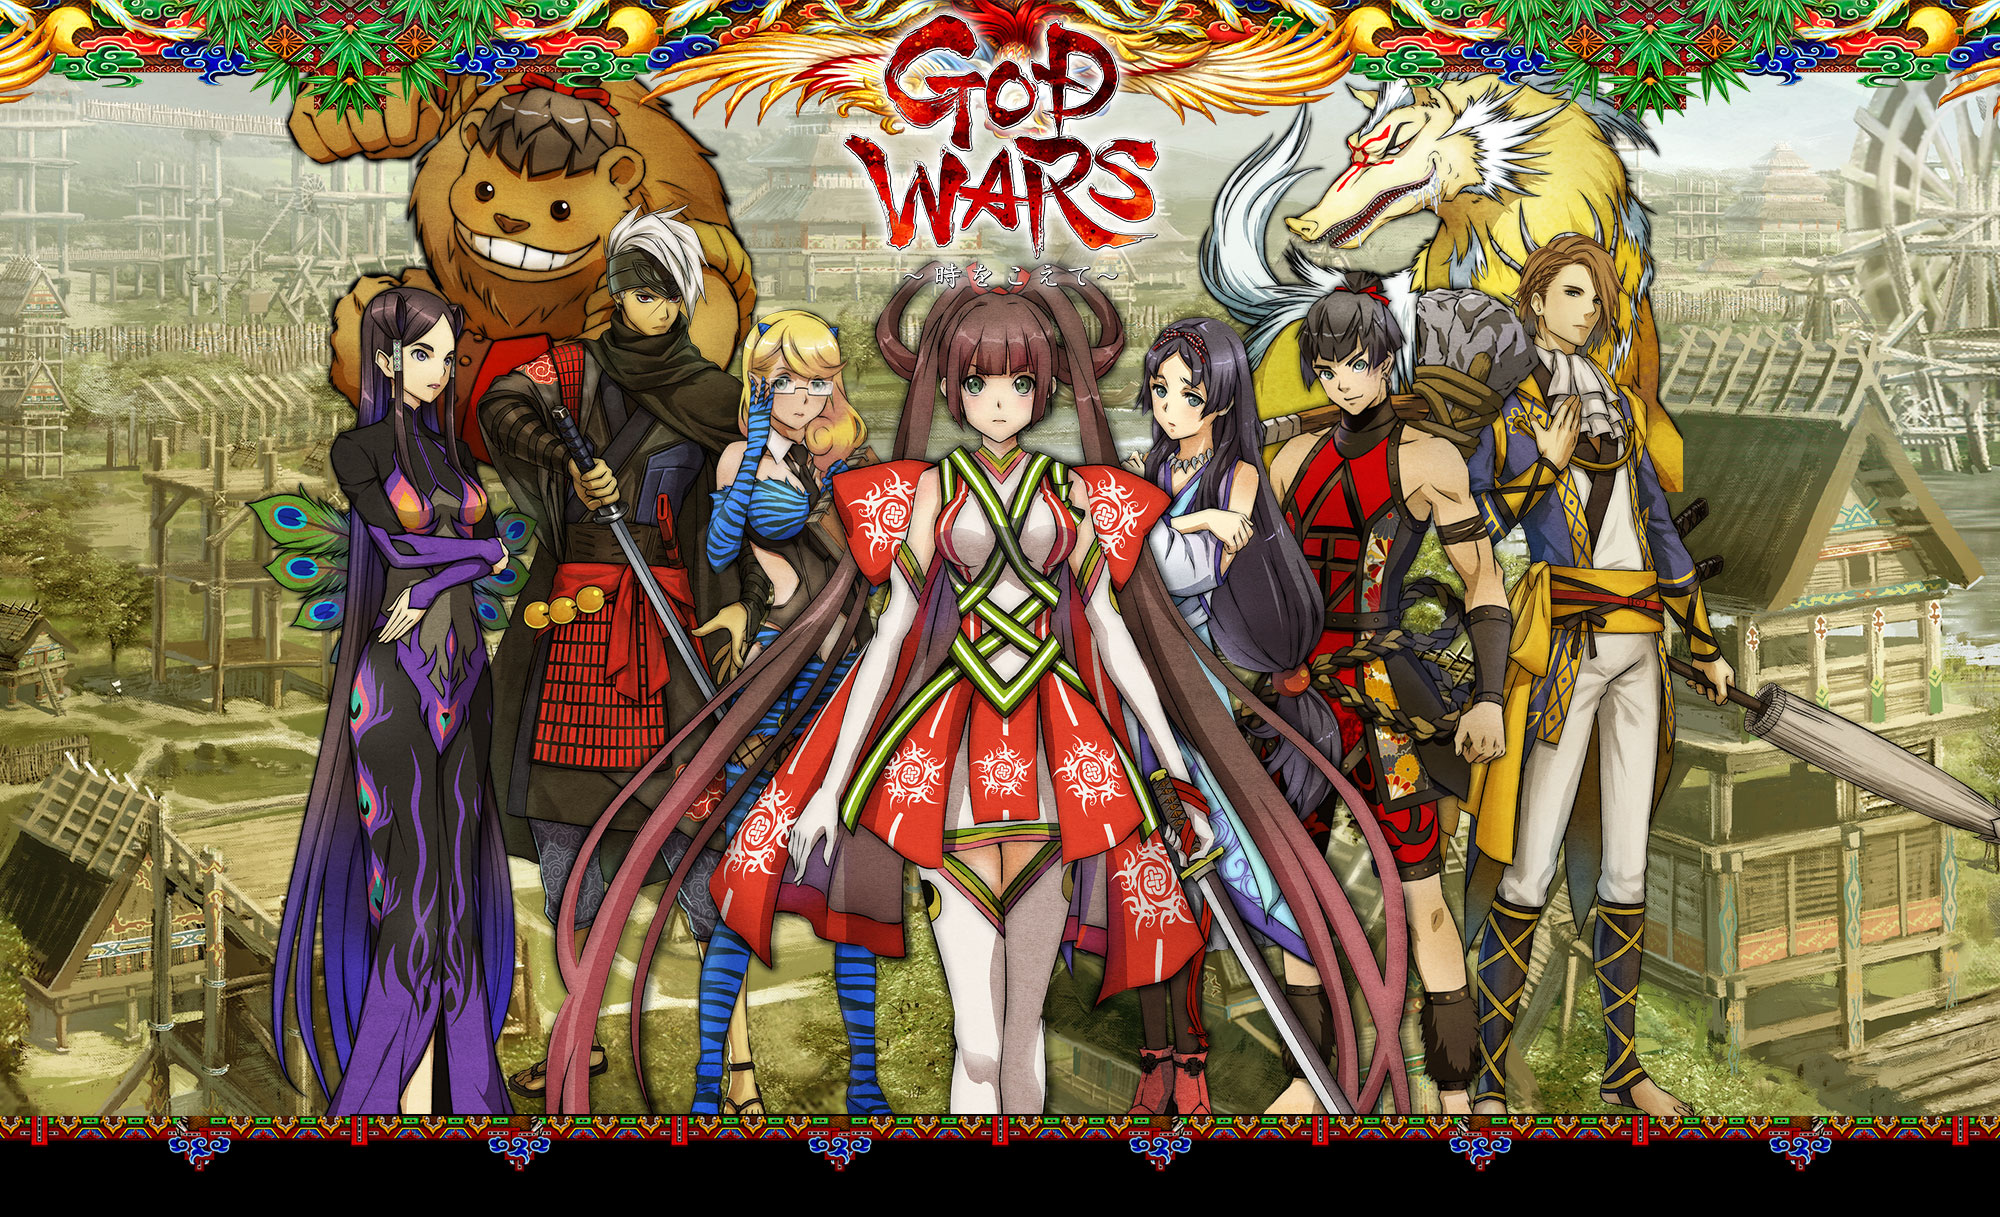 GOD WARS 日本神話大戦』公式サイト